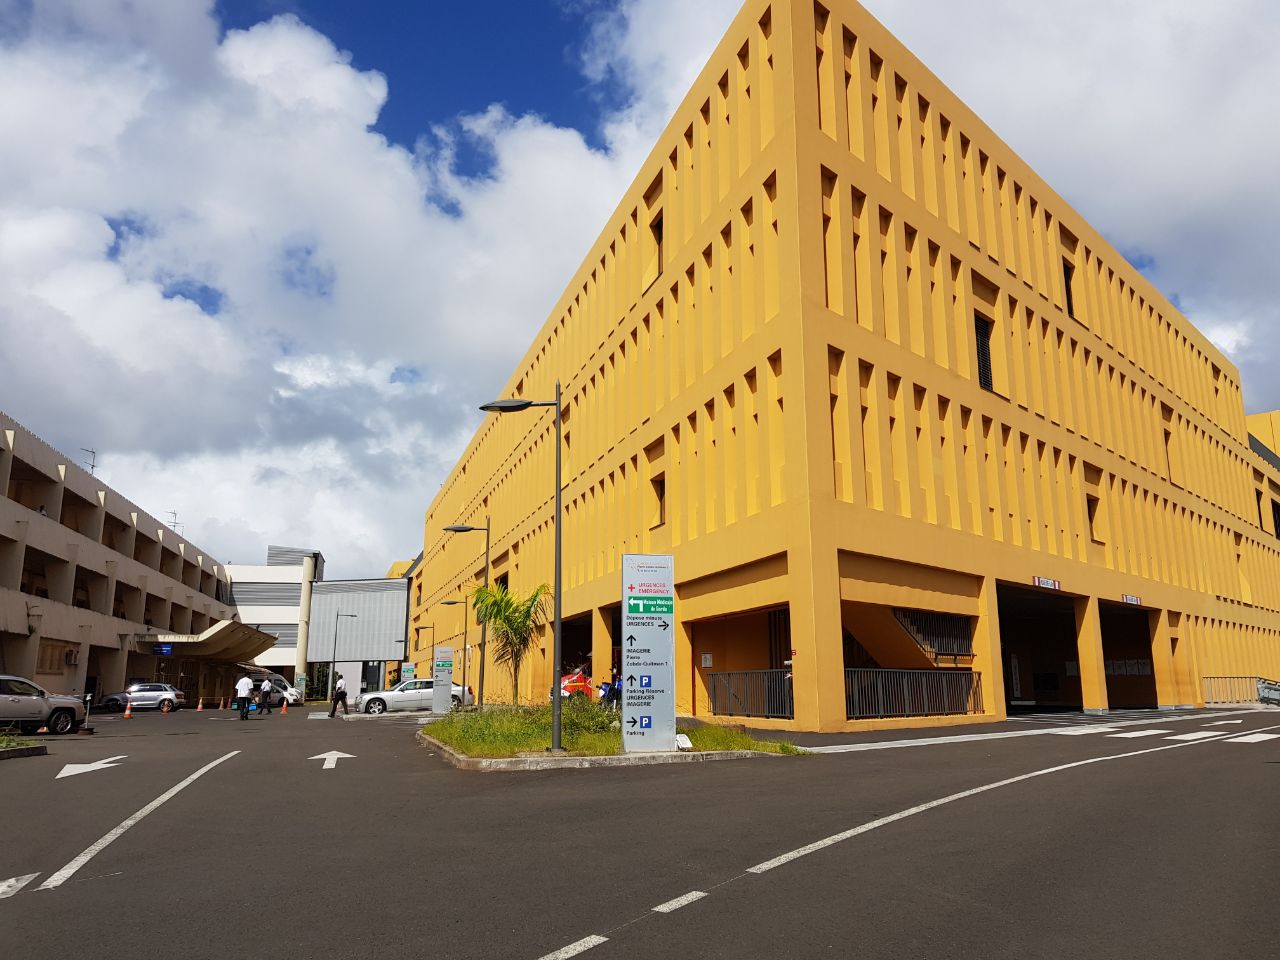     Le CHU de Martinique est en situation « d’hôpital en tension »

